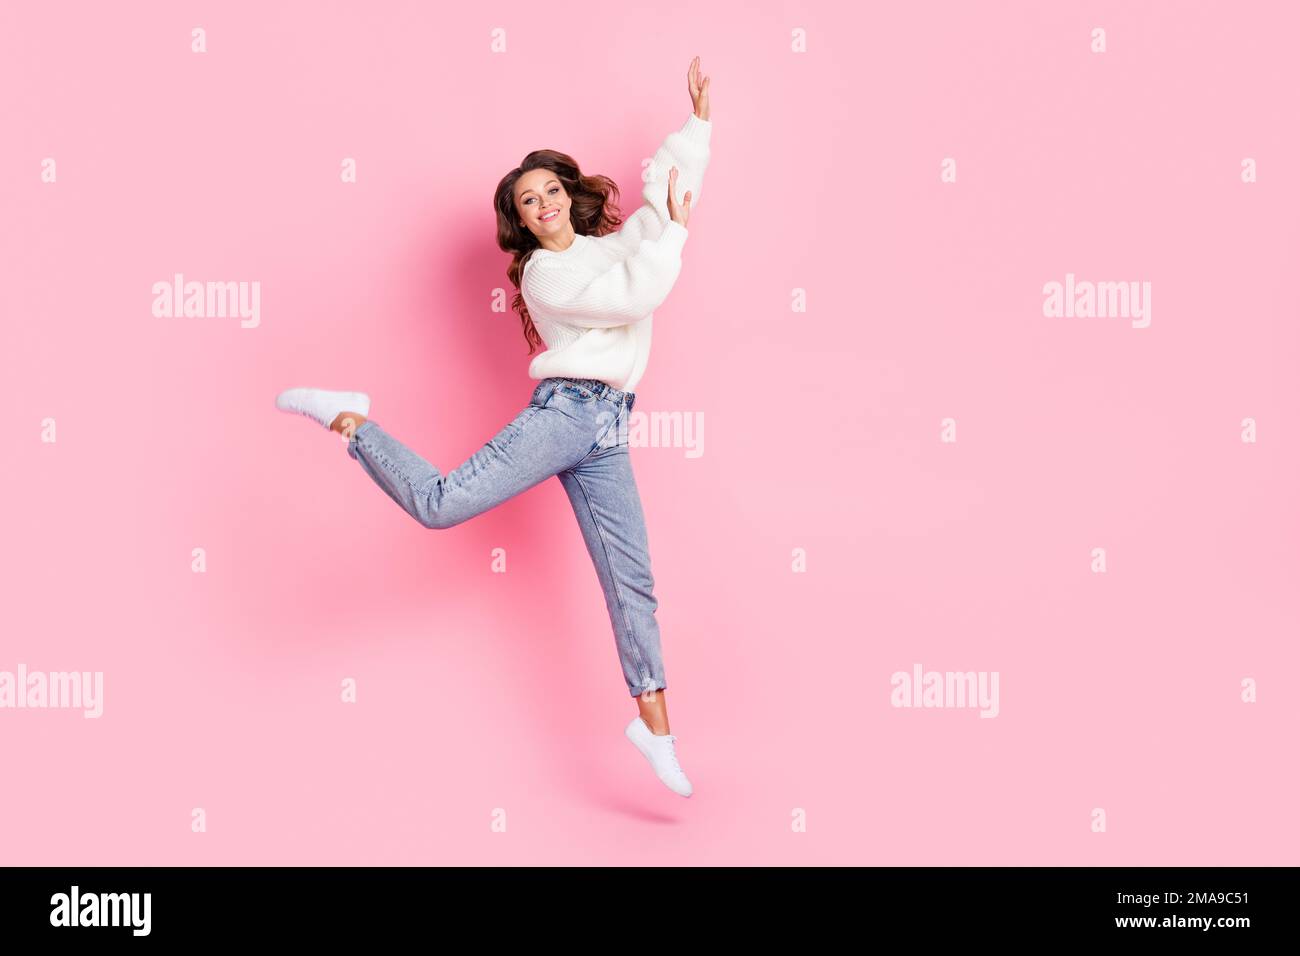 Langes Foto einer aufgeregten, glänzenden Dame mit weißem Pullover, der hoch springt und leer tanzt, isolierter pinkfarbener Hintergrund Stockfoto